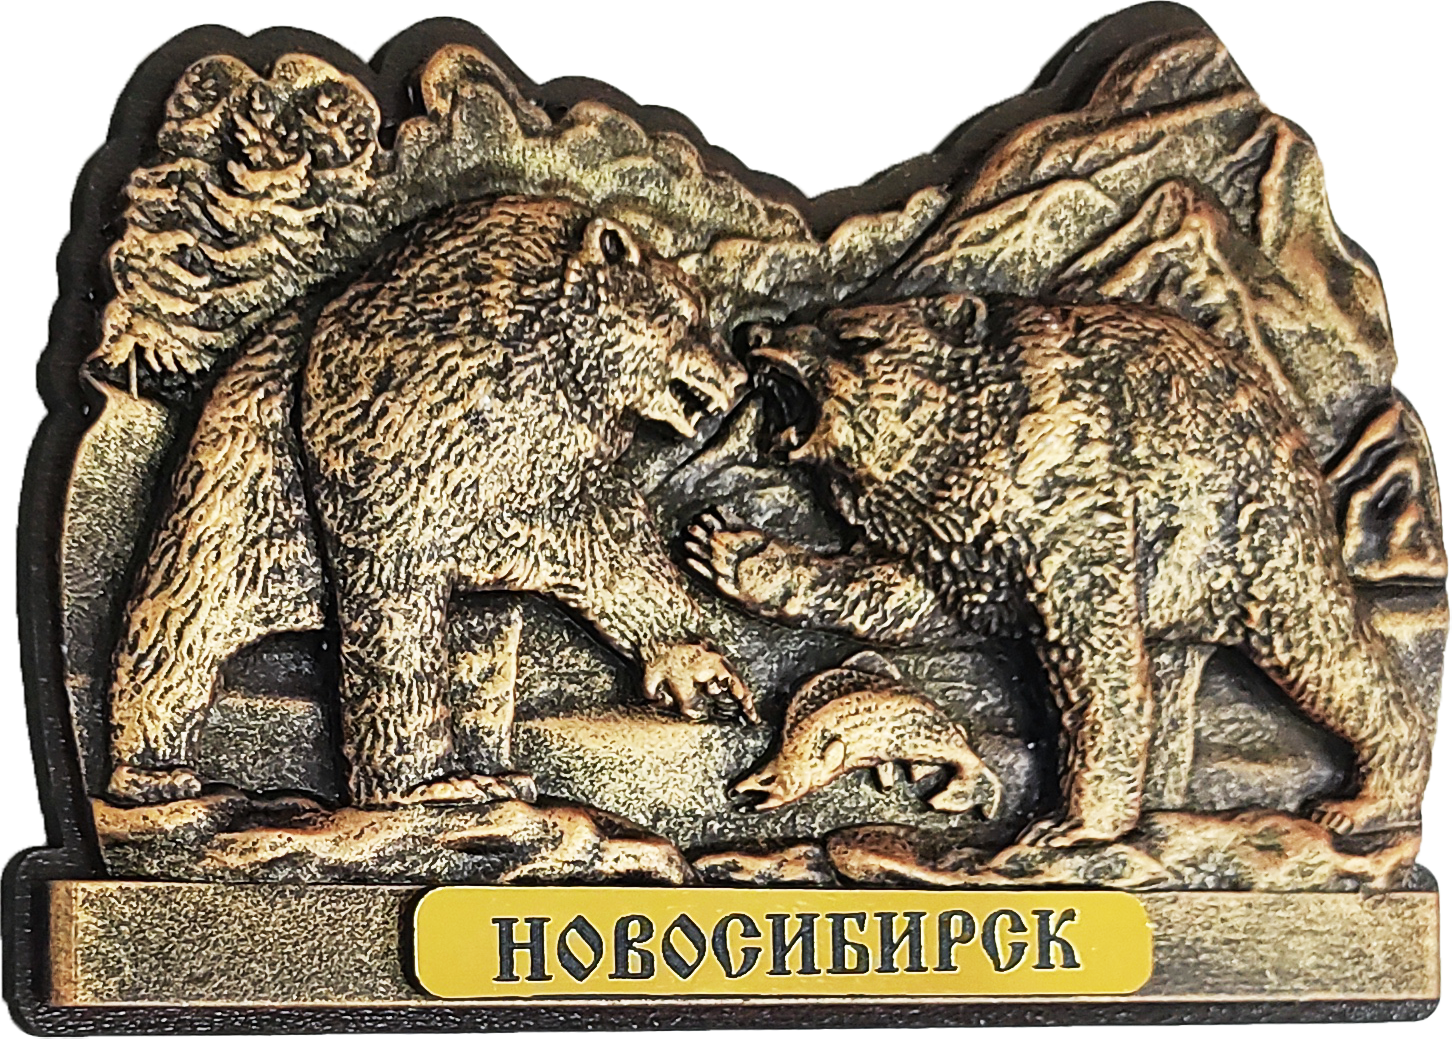 Подарки и сувениры, магазин, г. Новосибирск. Телефон, адрес, прайс-лист